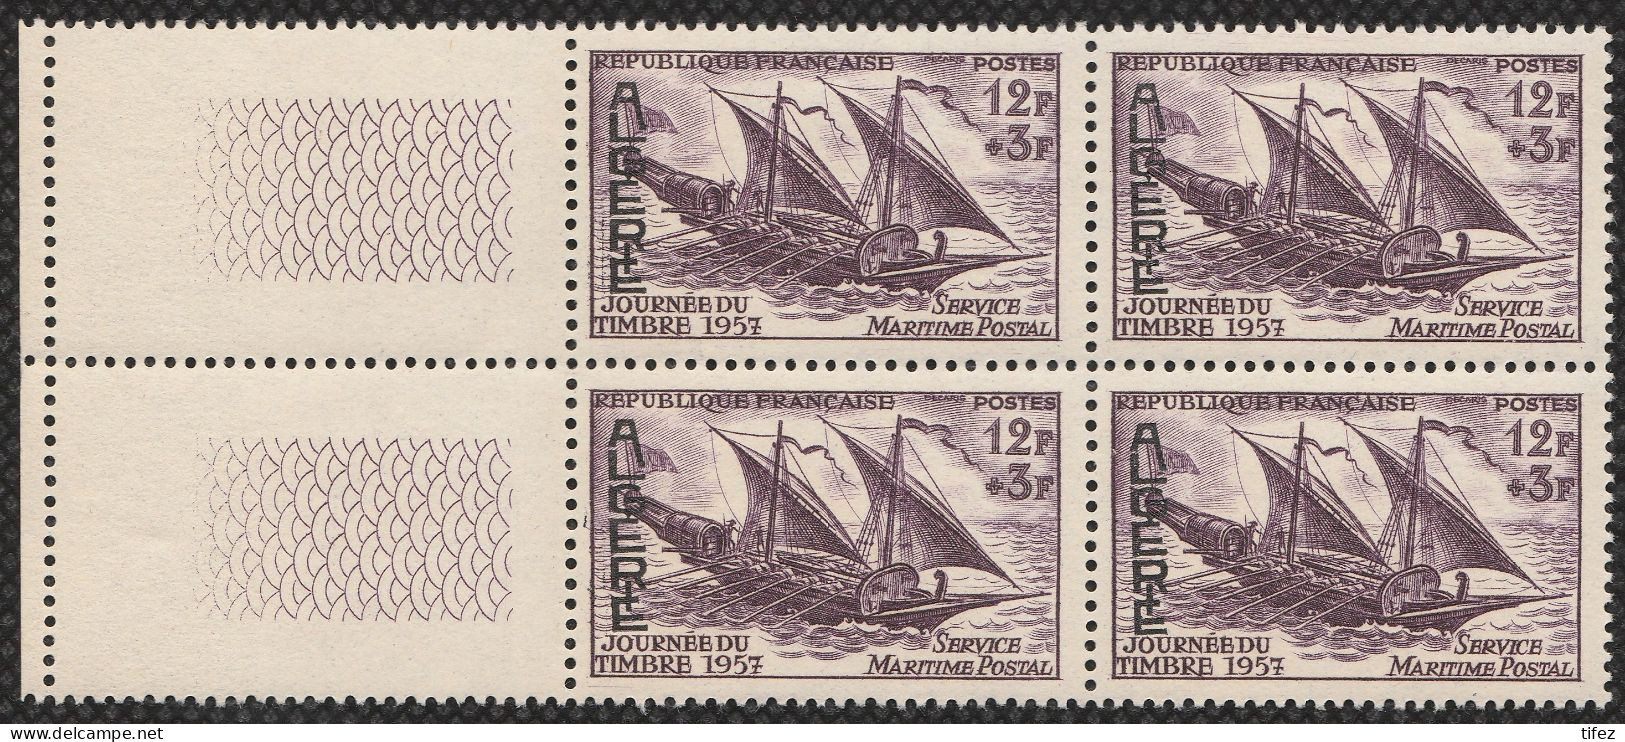 Année 1957-N°342 Neufs**MNH : Journée Du Timbre -Service Maritime Postal (bateau) Bloc De 4  (g-1) - Ongebruikt